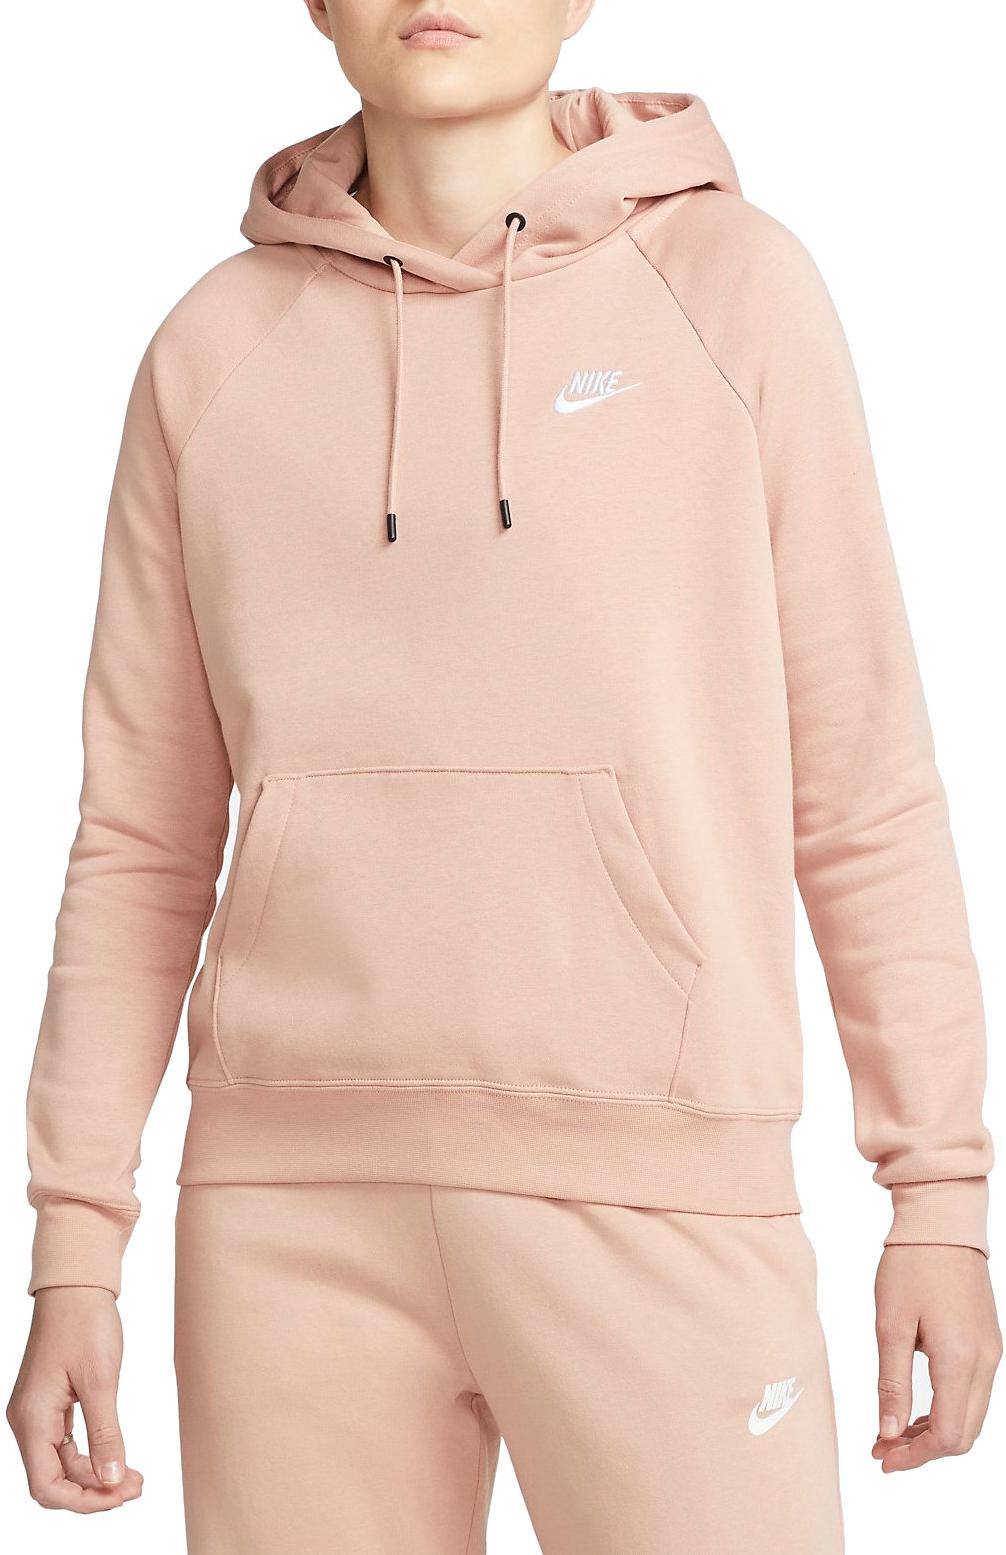 Hooded sweatshirt Nike Sportswear Essential Women s Fleece Pullover Hoodie